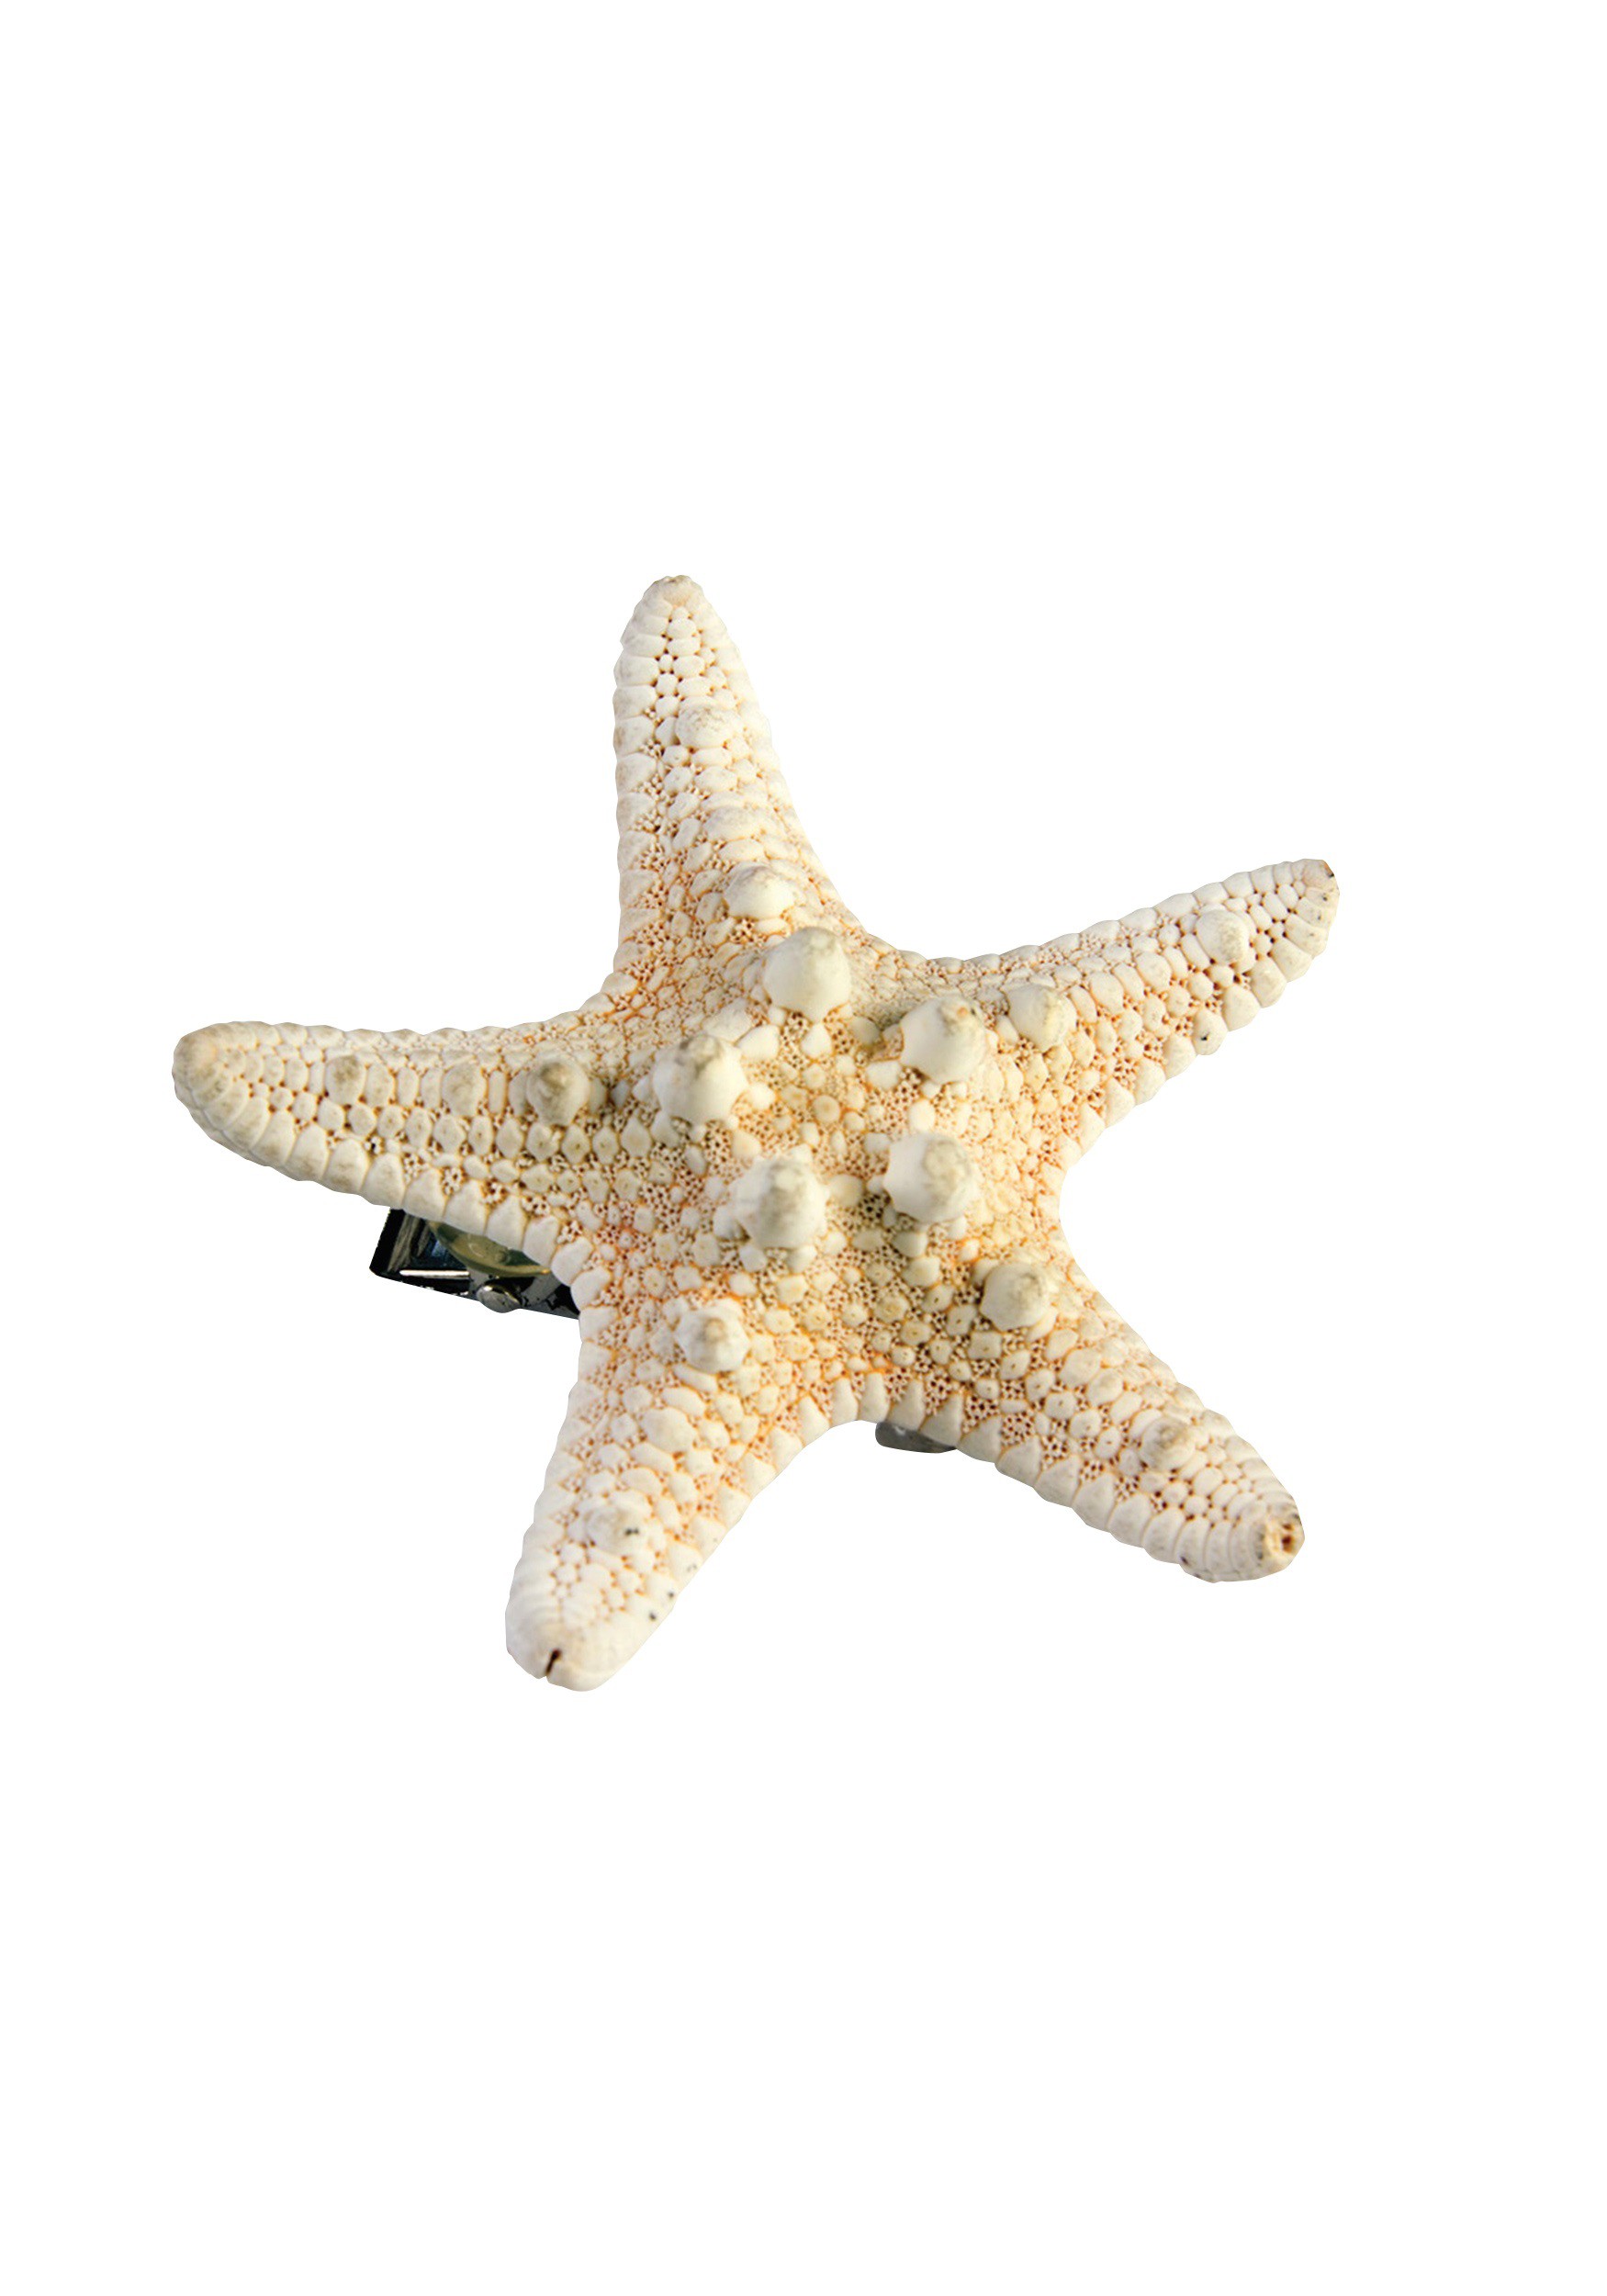 Starfish photo